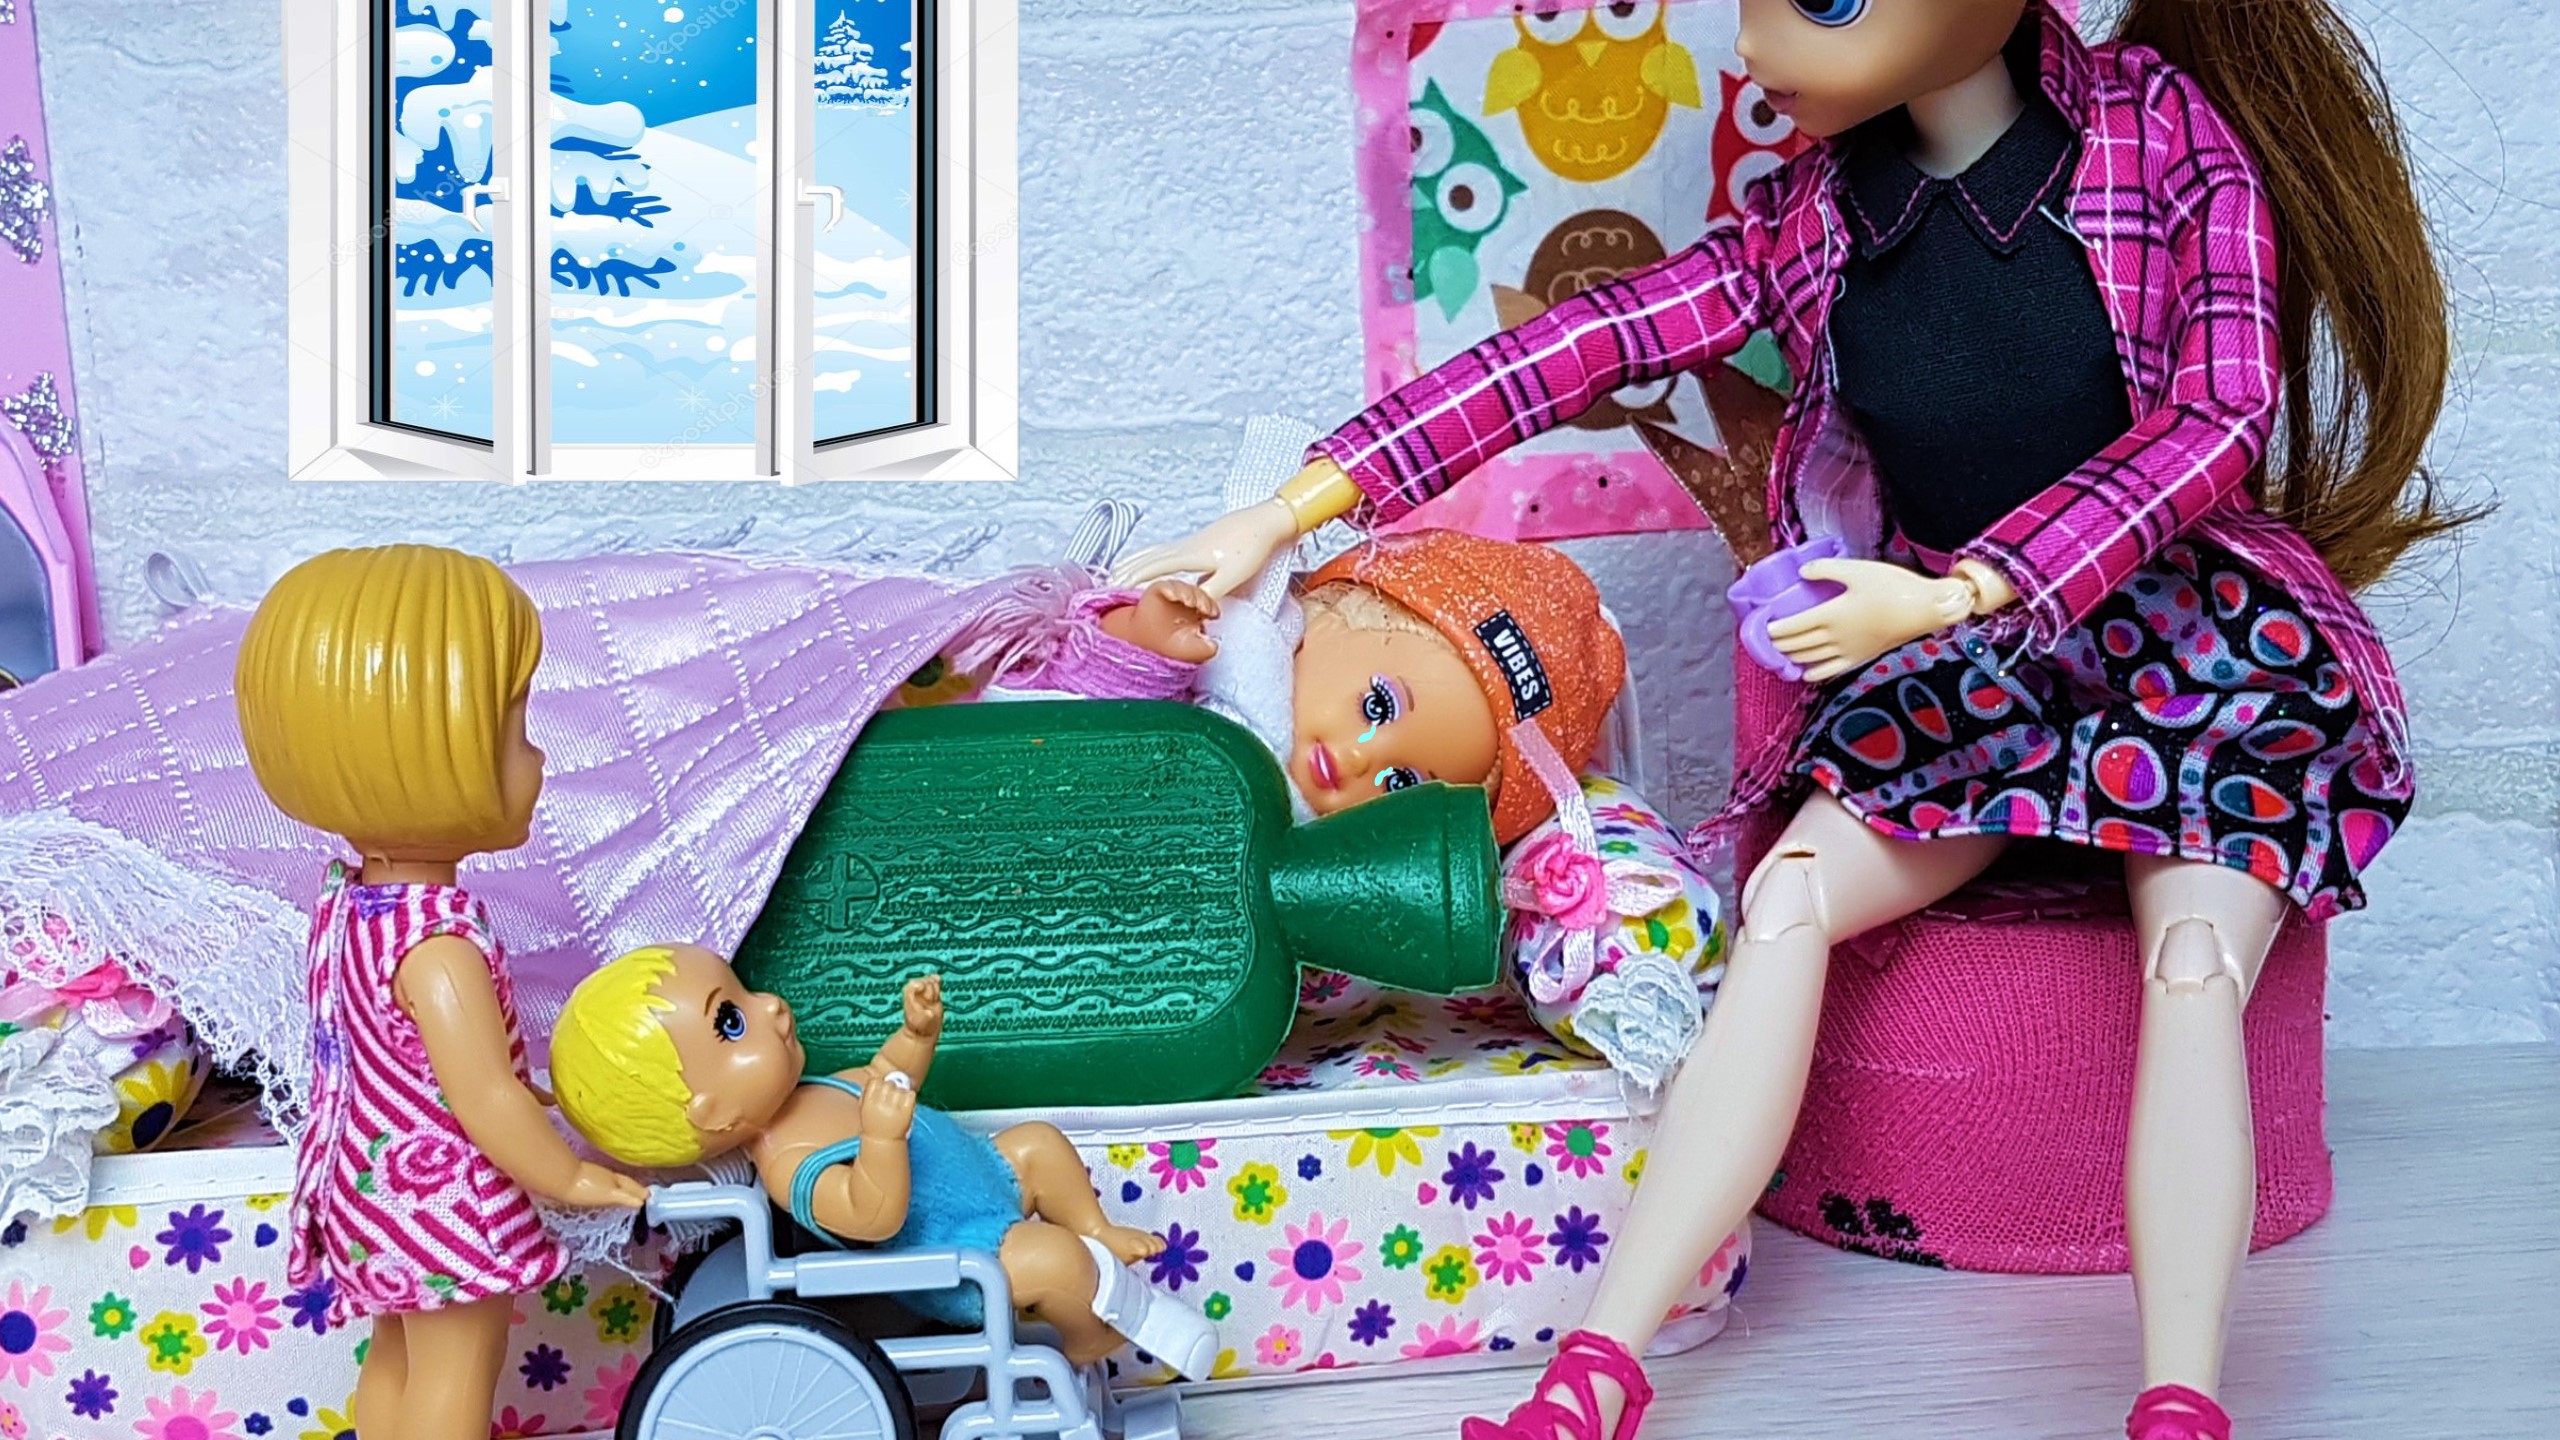 Куклы веселая семейка макс. Куклы Барби Катя и Макс весёлая семейка. ДАРИНЕЛКА ТВ Макс и Катя. Кукла для кукольного мультфильма.